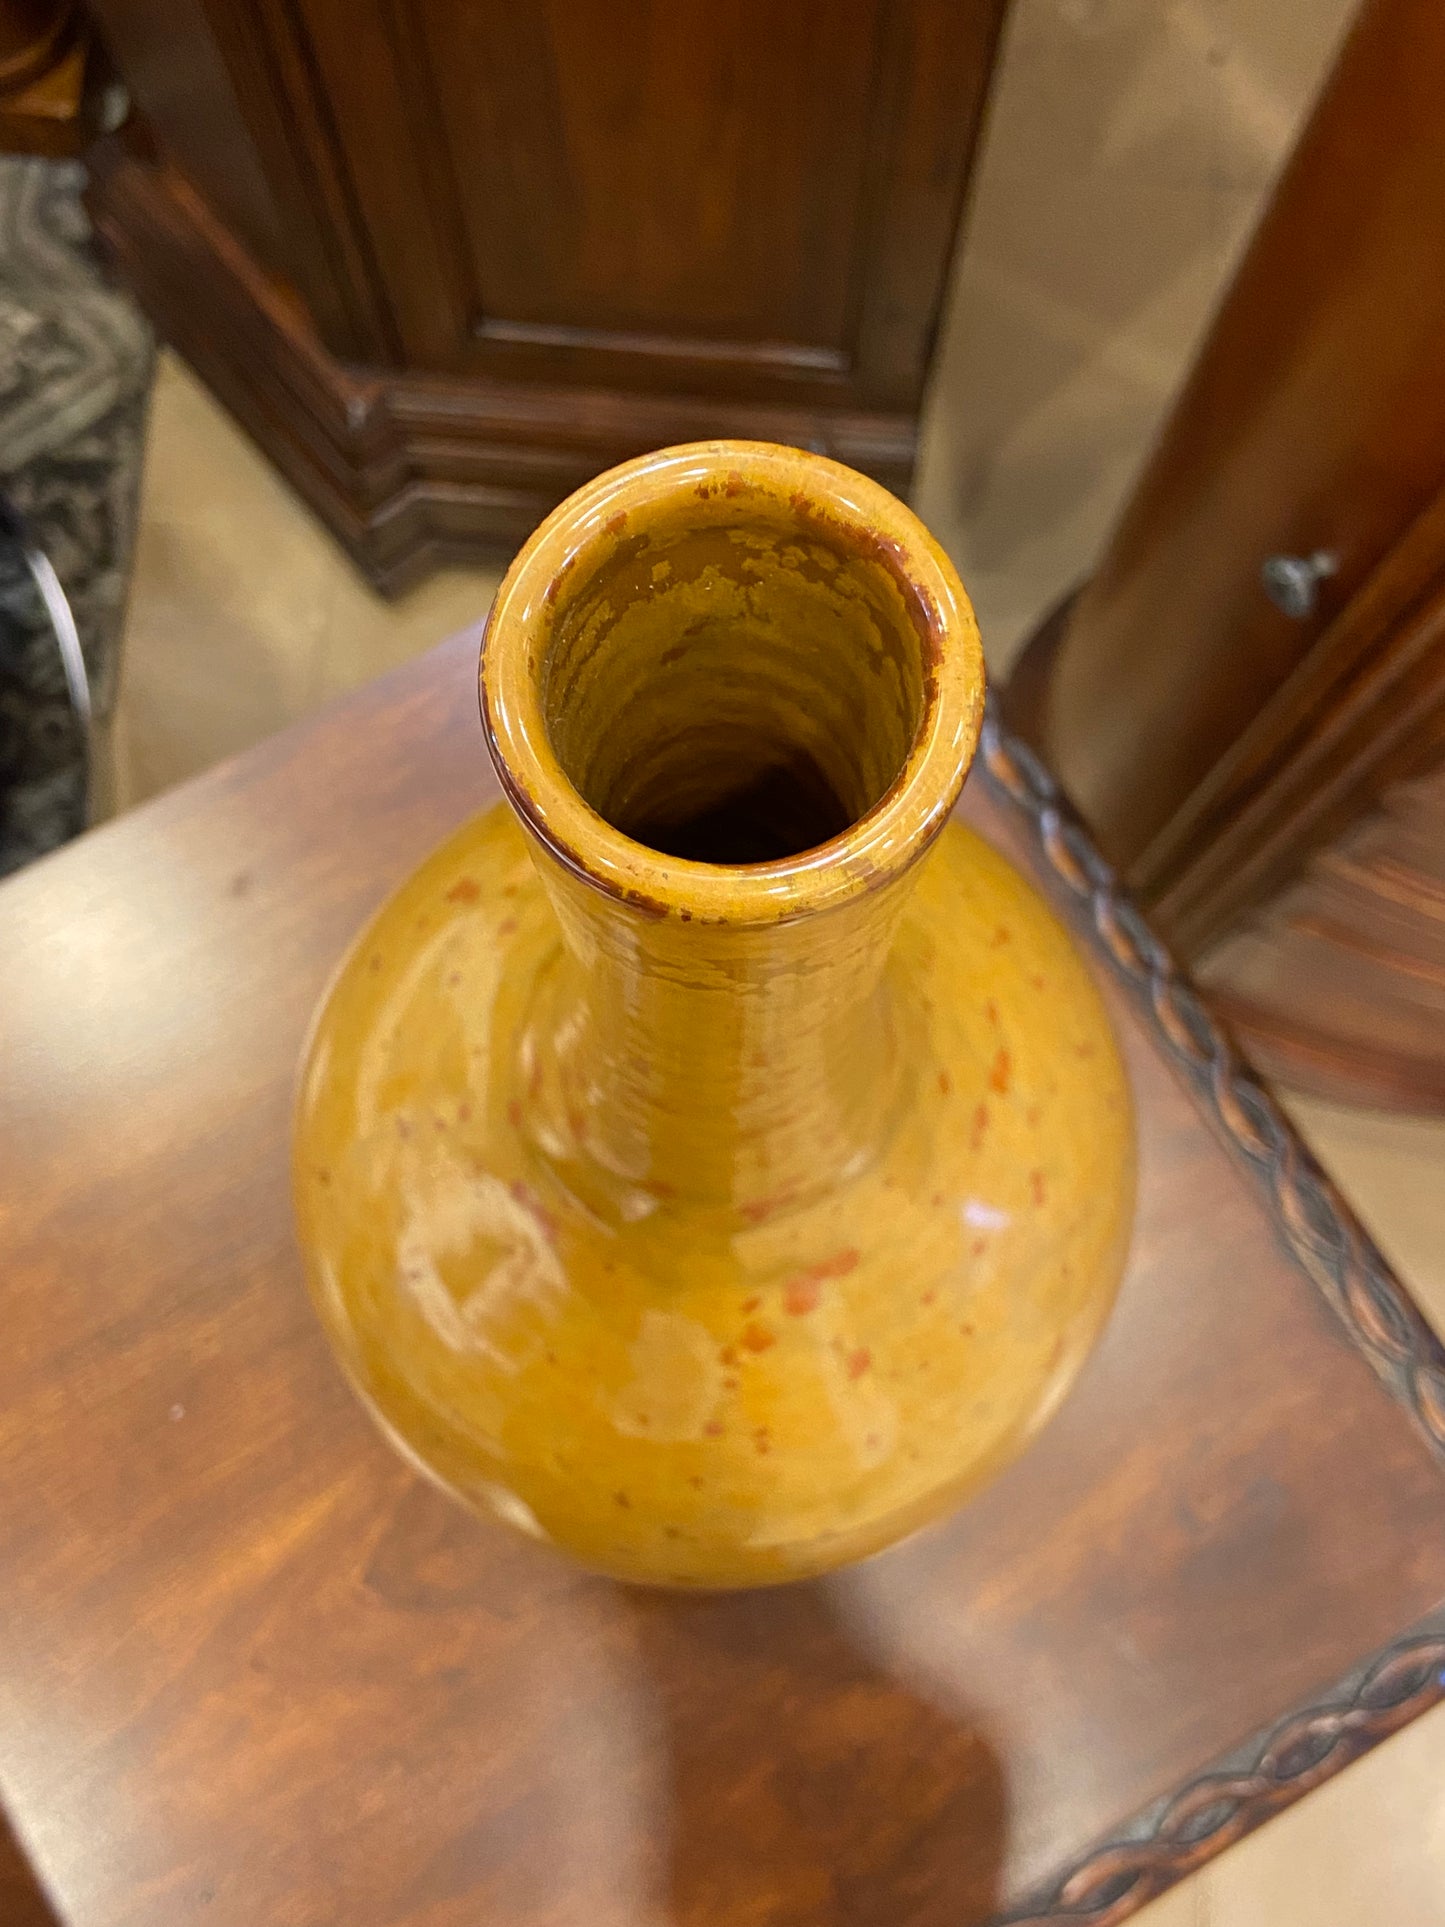 Speckled Vase (25493)